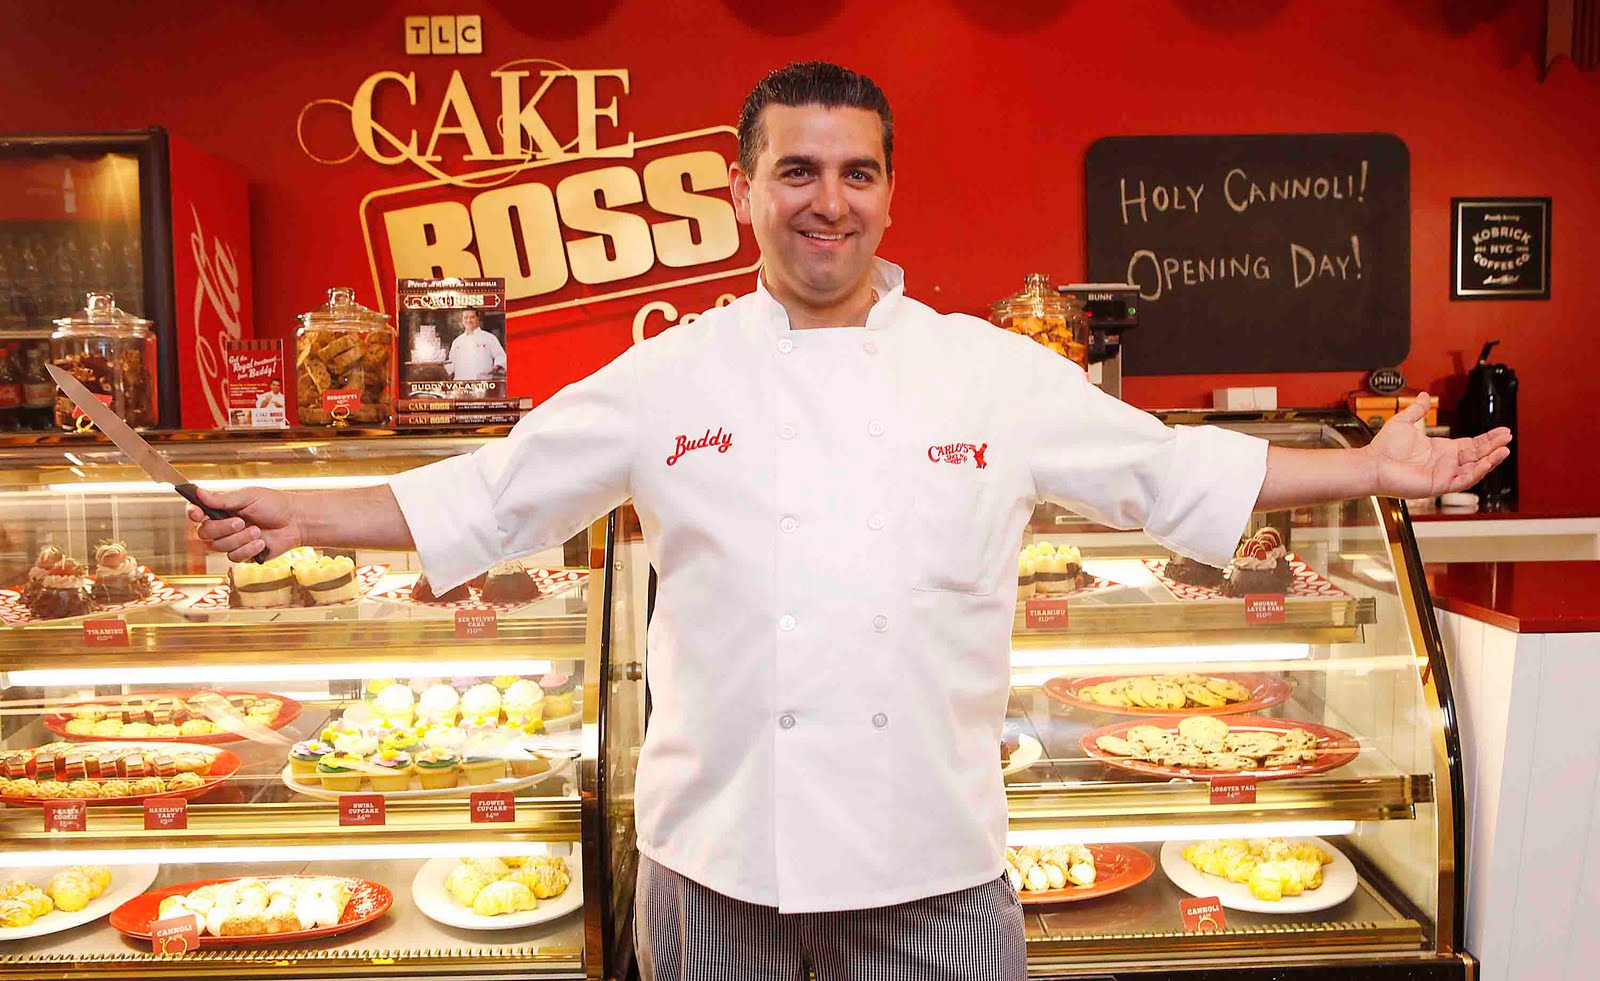 Buddy Valastro do “Cake Boss” é contratado pela Record